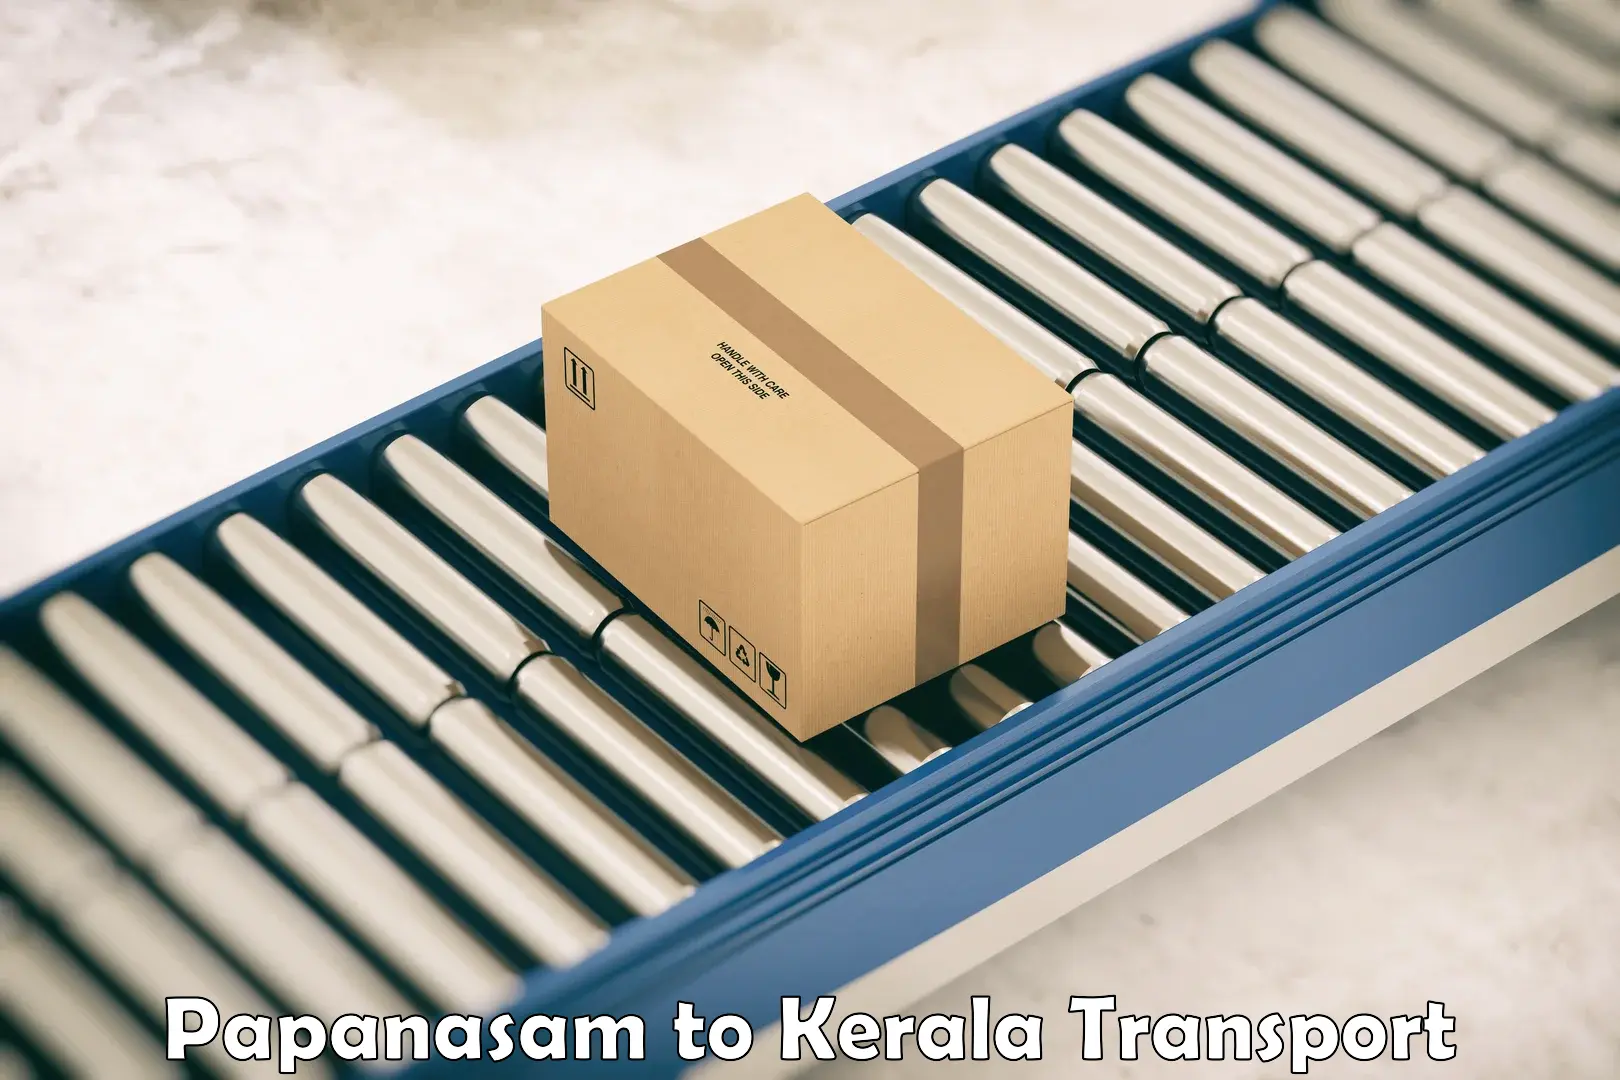 Commercial transport service Papanasam to Kattappana